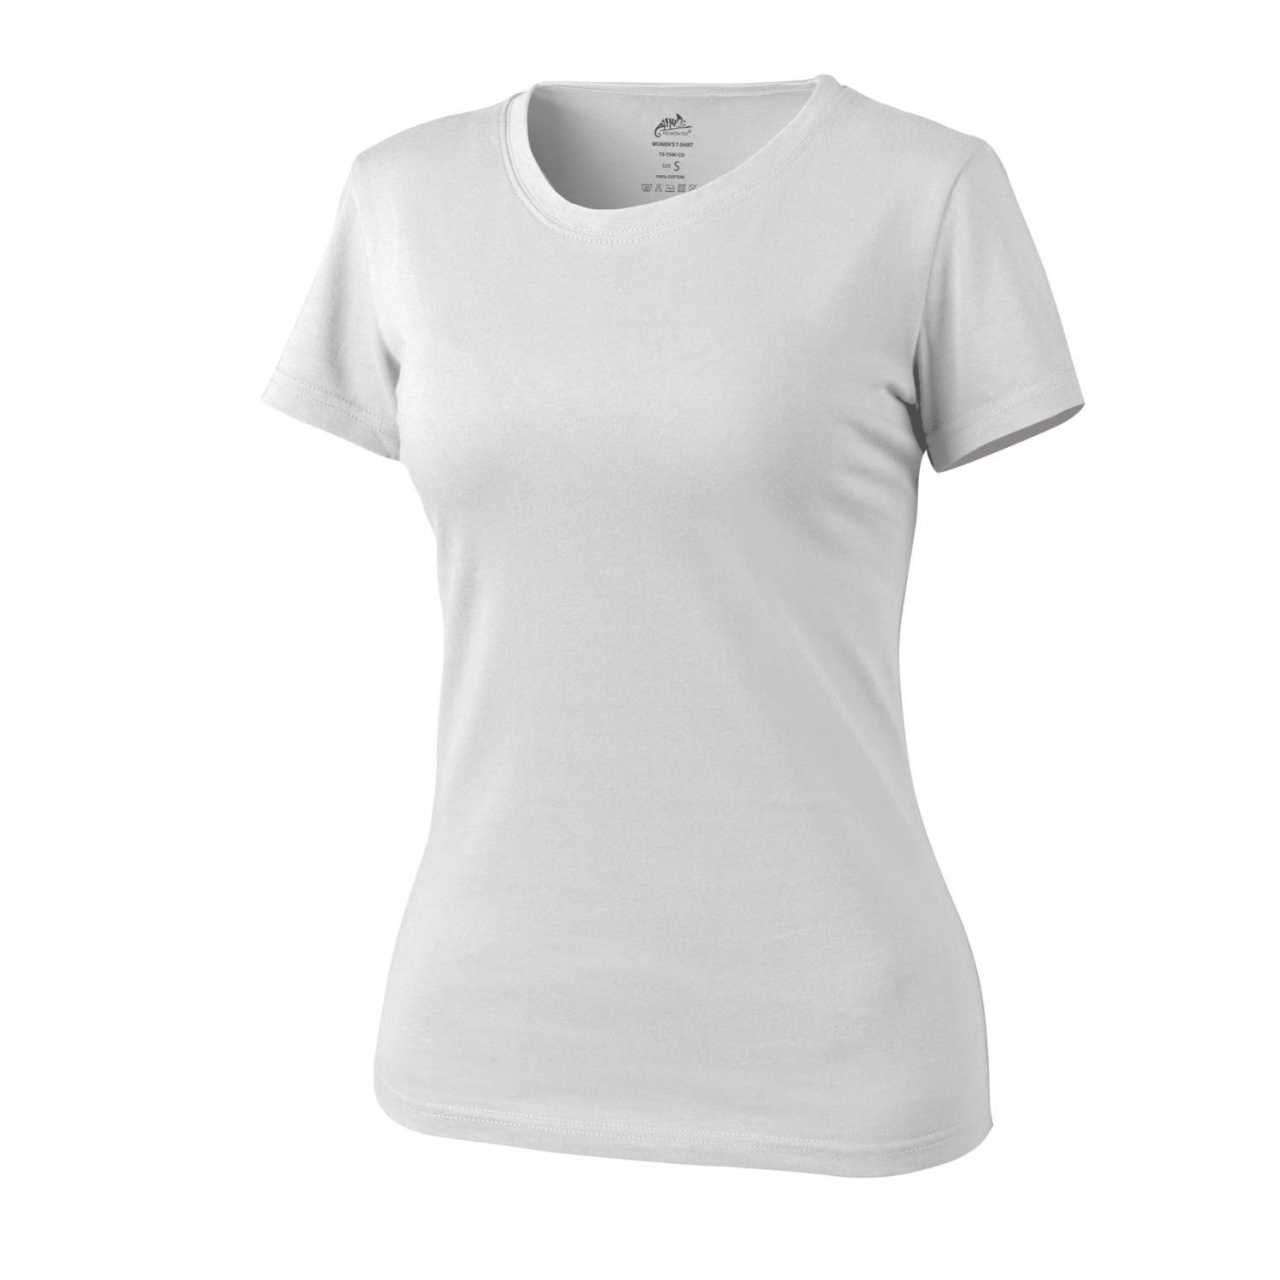 Tričko dámské Helikon Womens Shirt - bílé, XL